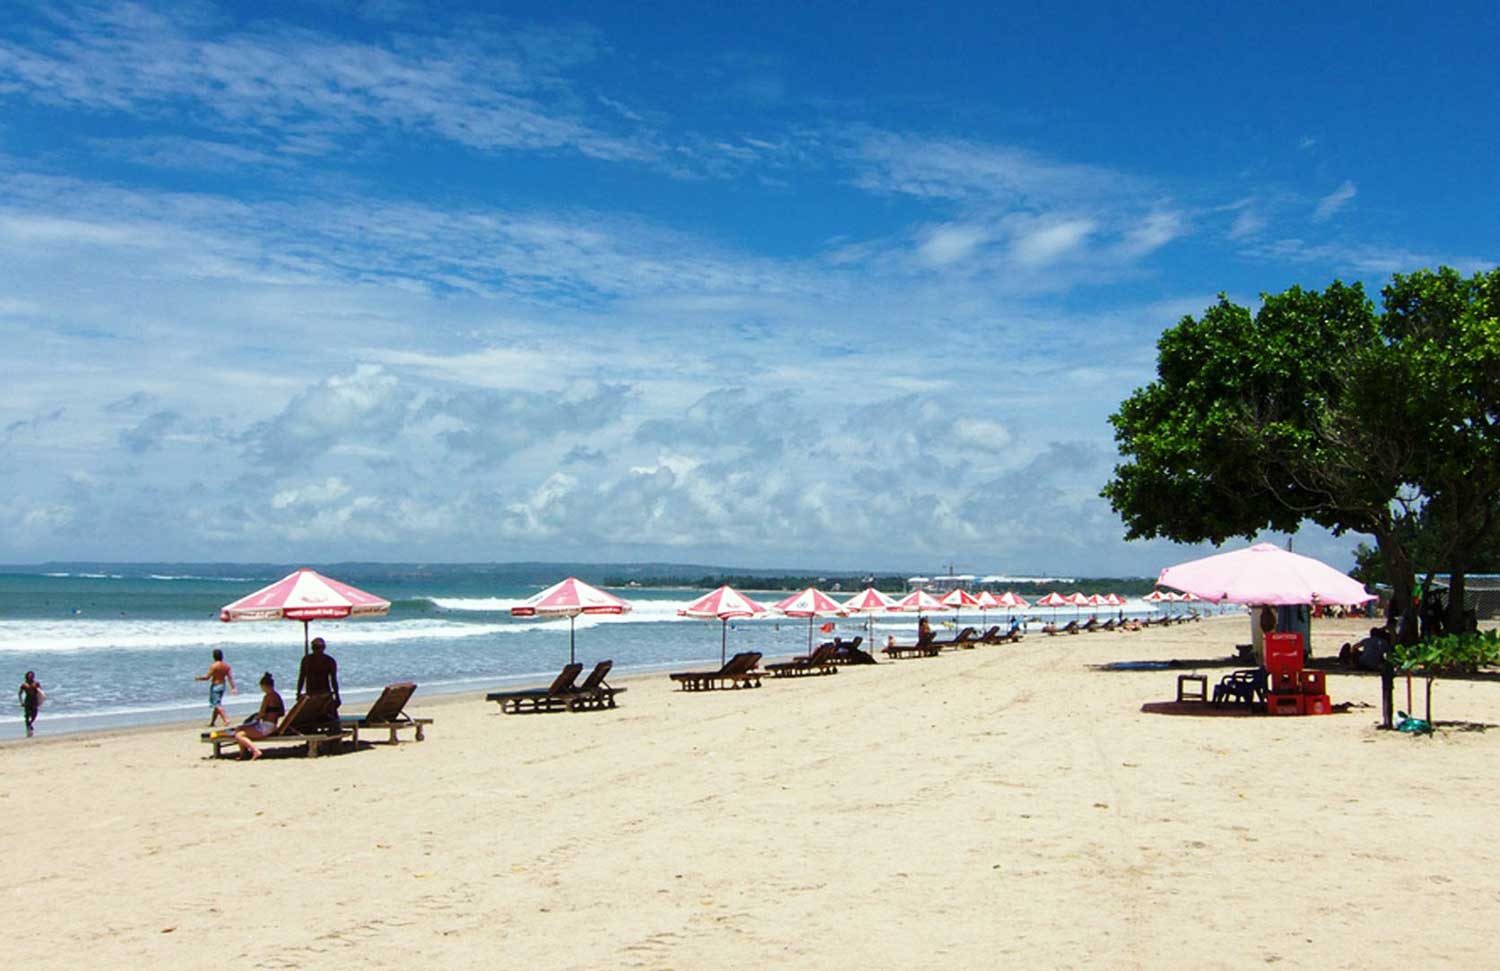 Wisata Pantai Kuta Bali Yang Eksotis dan Mendunia, Dengan Keindahan